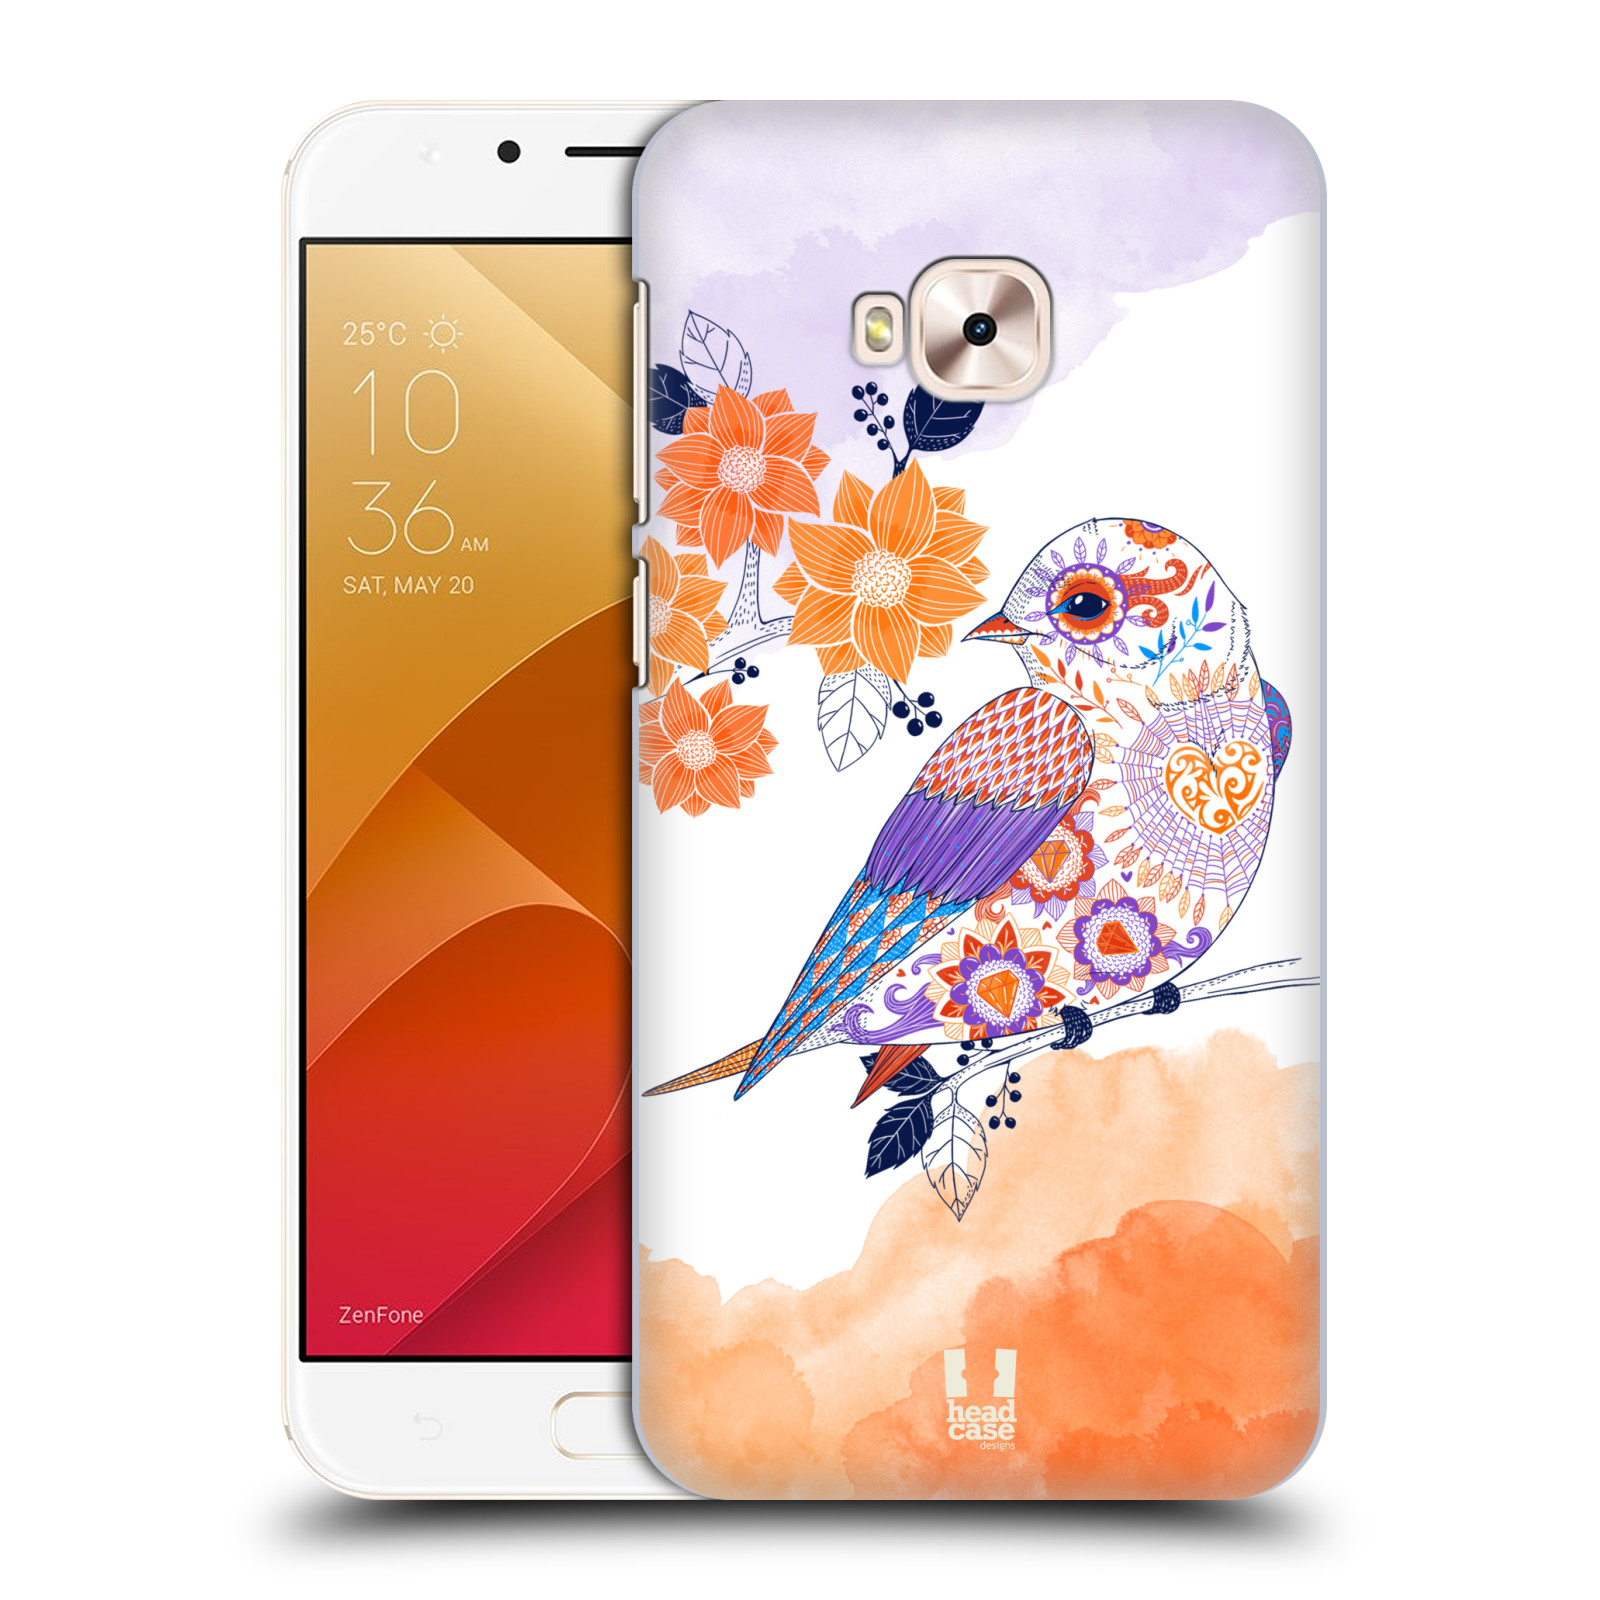 HEAD CASE plastový obal na mobil Asus Zenfone 4 Selfie Pro ZD552KL vzor Květina ptáčci ORANŽOVÁ